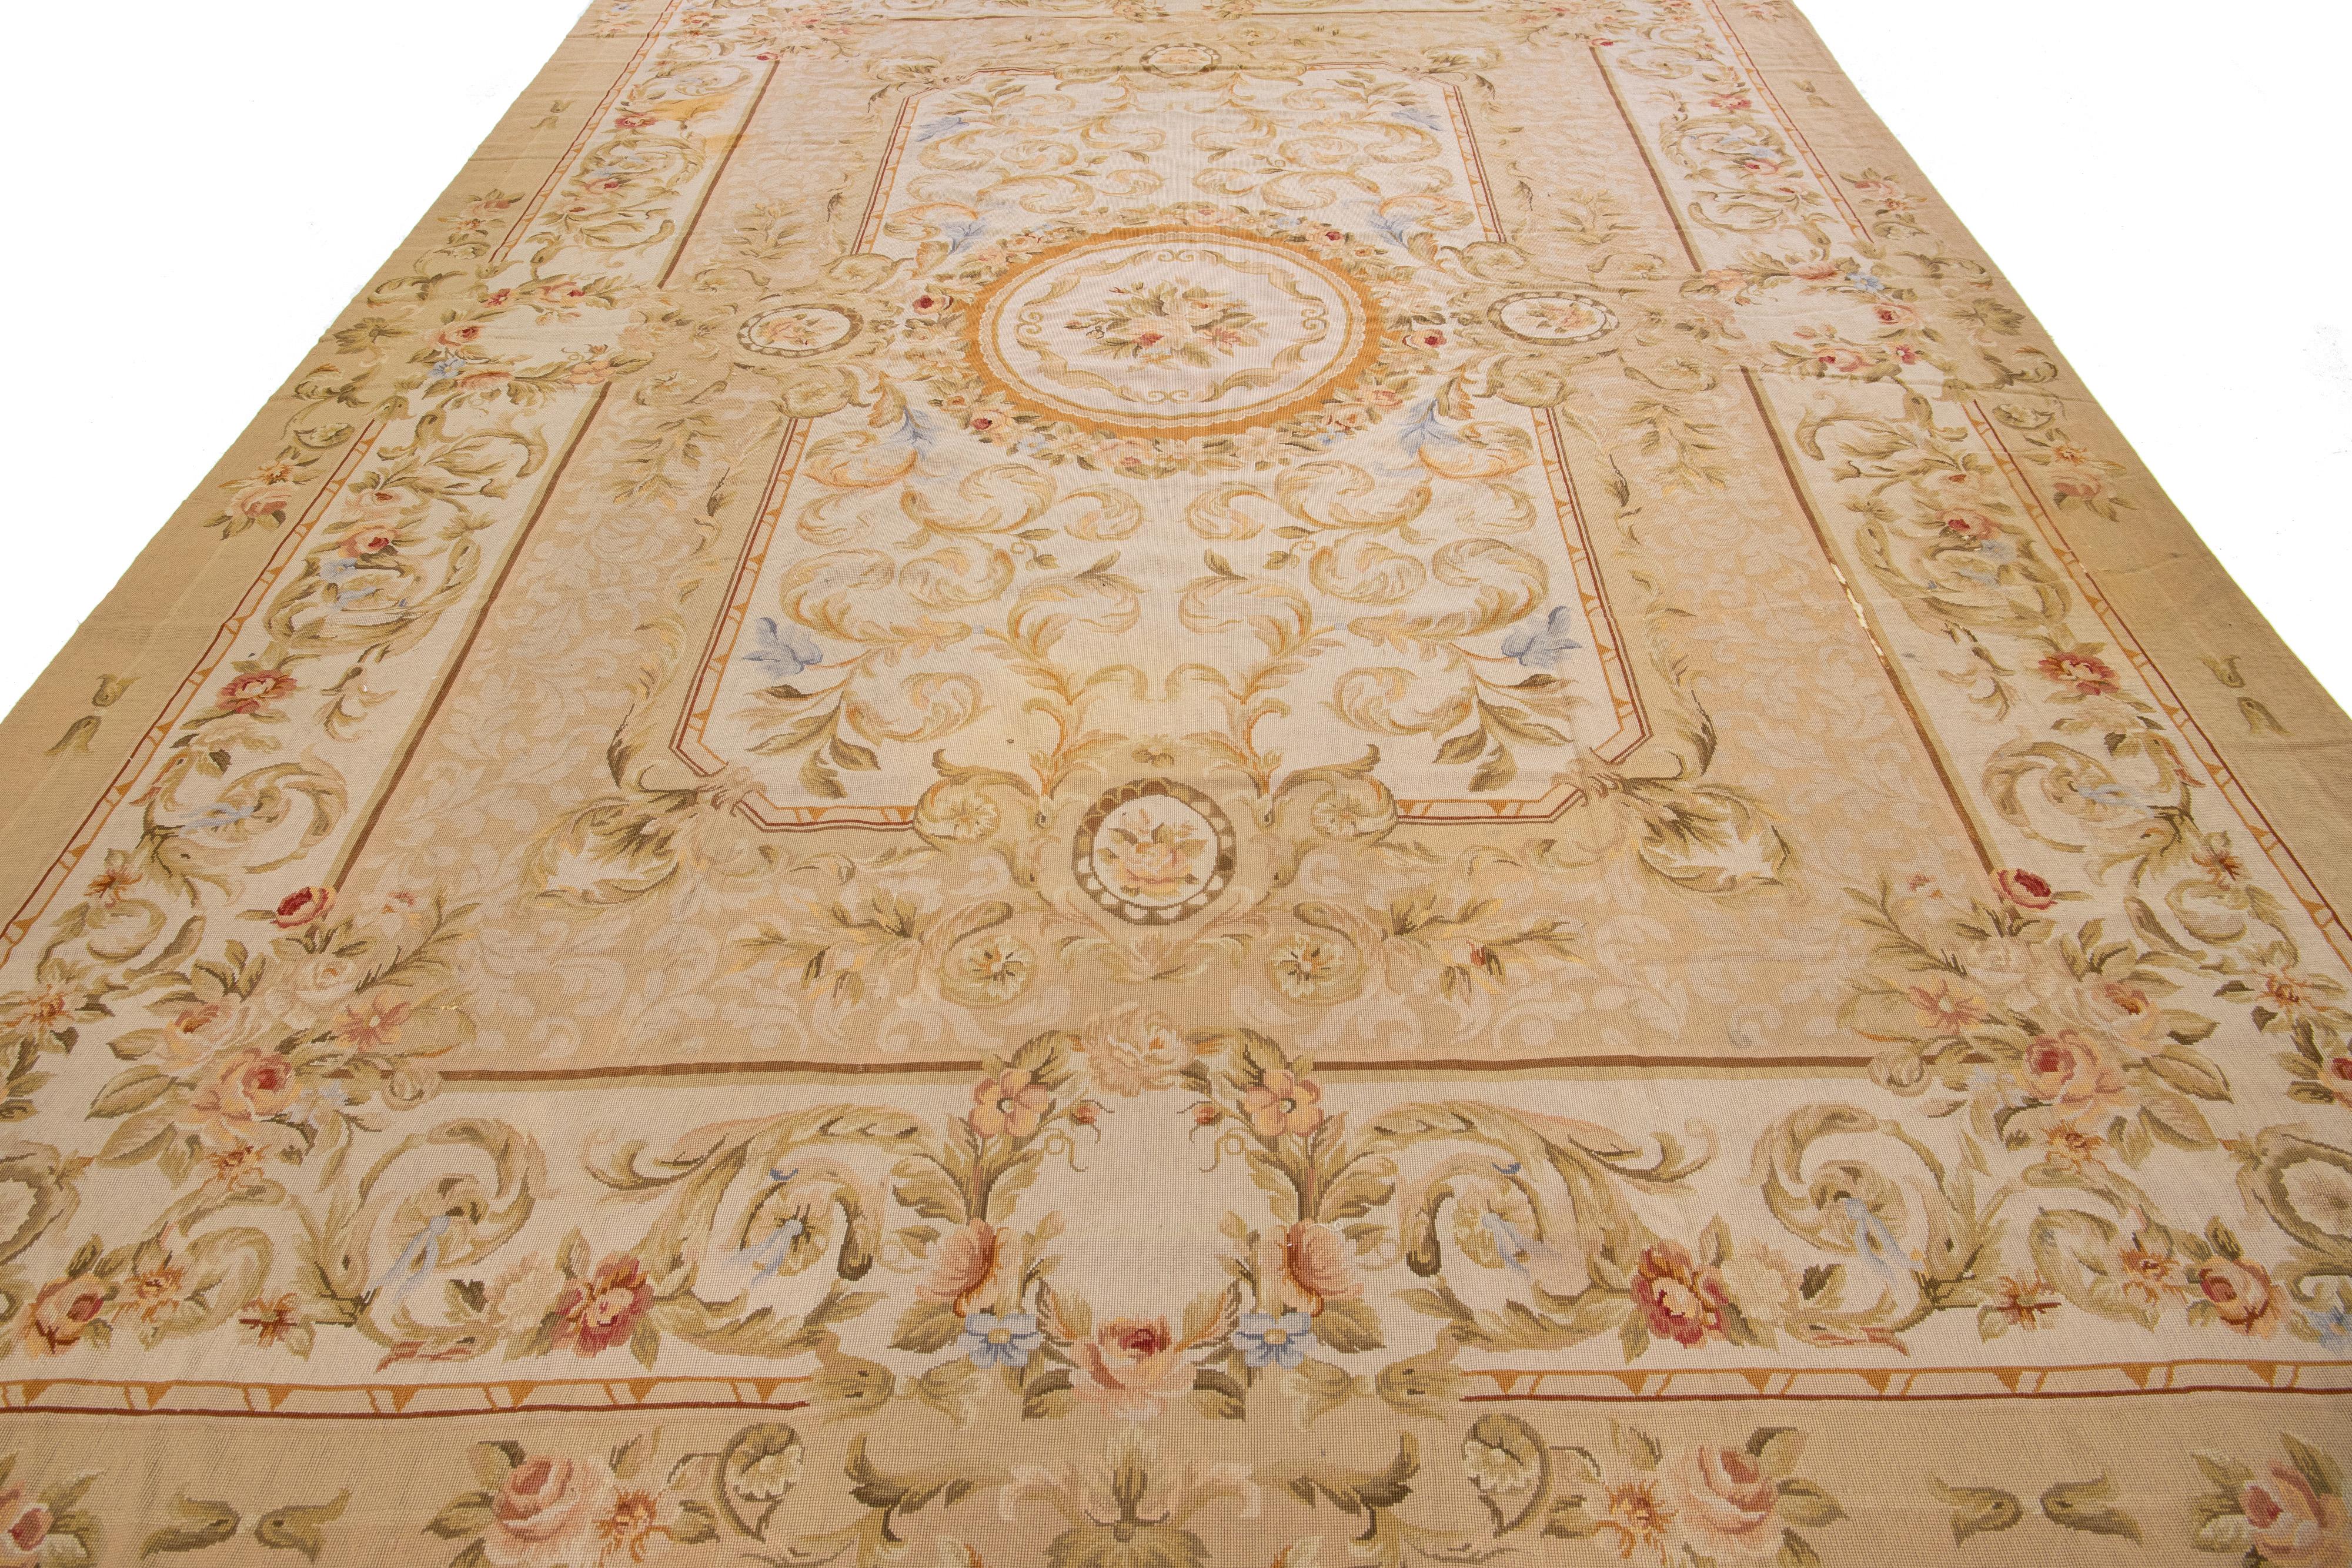 Dieser elegante Aubusson-Wollteppich im Vintage-Stil besticht durch sein beiges Farbfeld. Der Teppich ist mit fein detaillierten, exquisiten Blumenmustern über das gesamte Design verziert.

Dieser Teppich misst 9'9